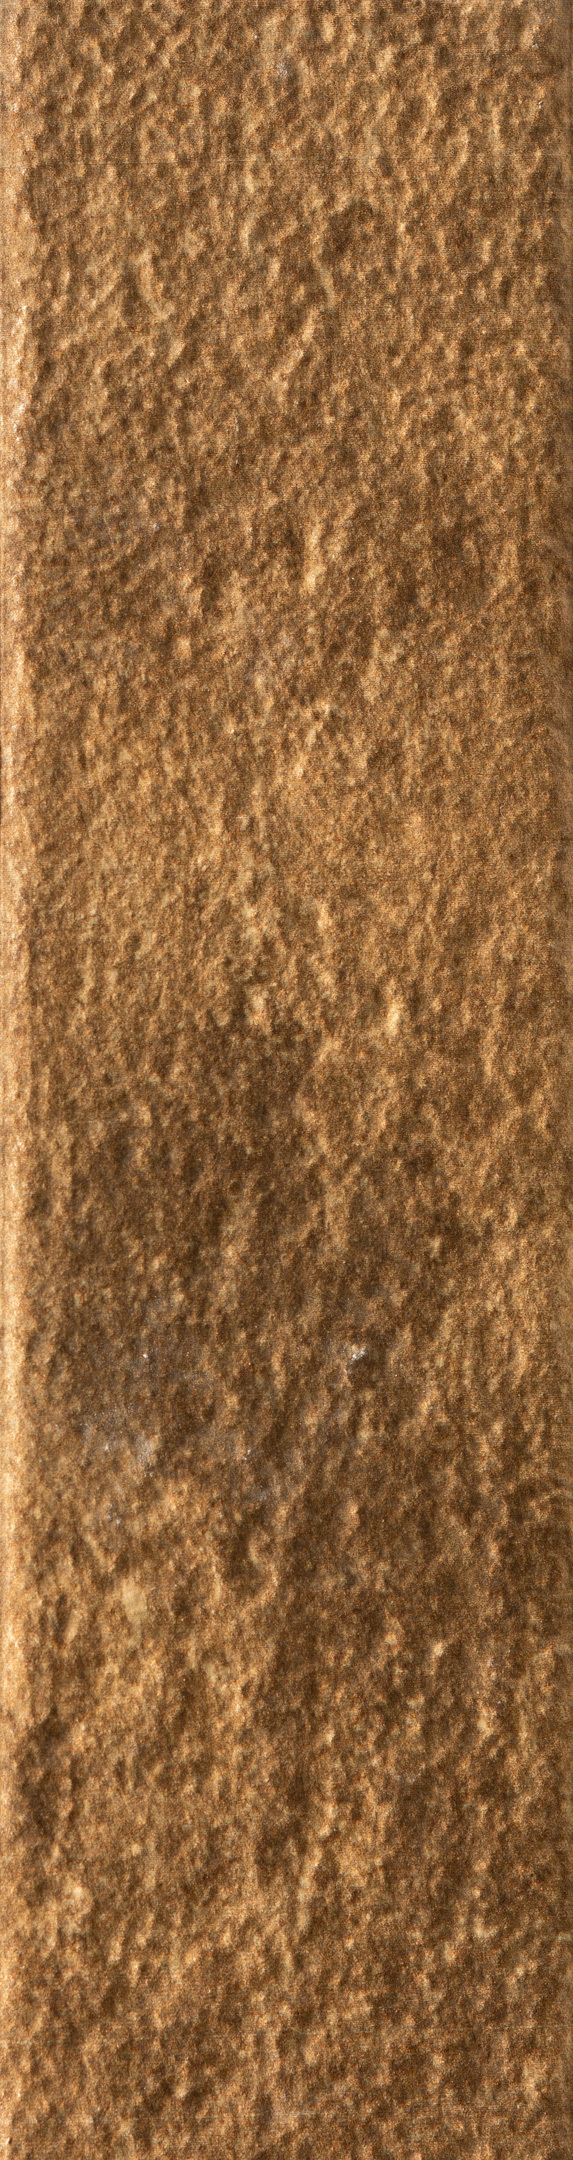 фото Клинкерная плитка керамин теннесси светло-коричневая 24,5х6,5 см (34 шт.=0,54 кв.м)